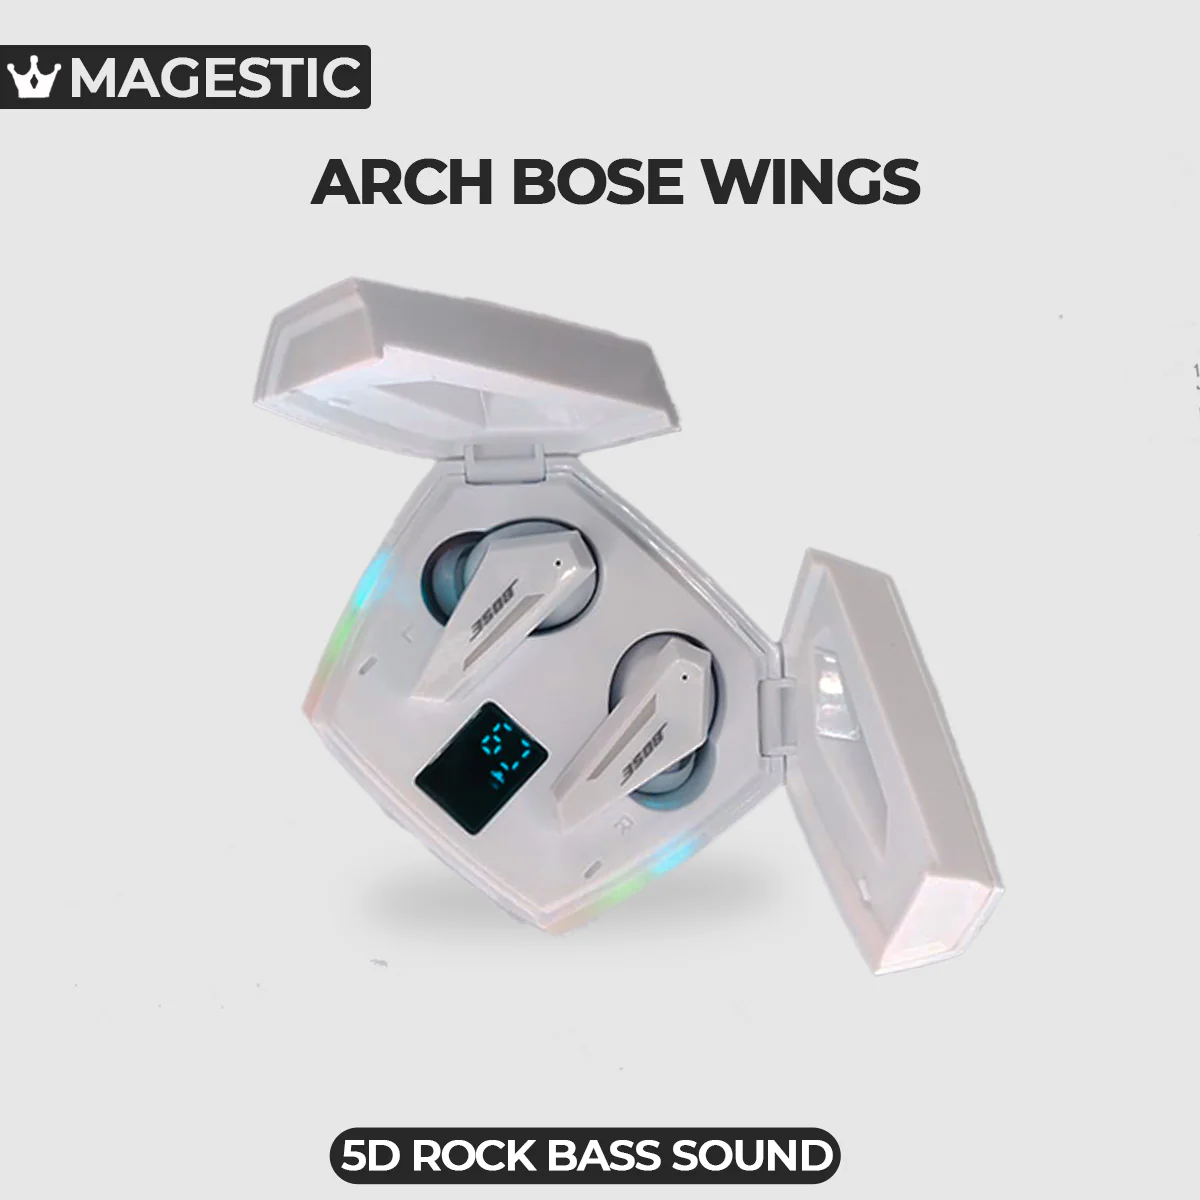 arch bose wings wireless earbuds